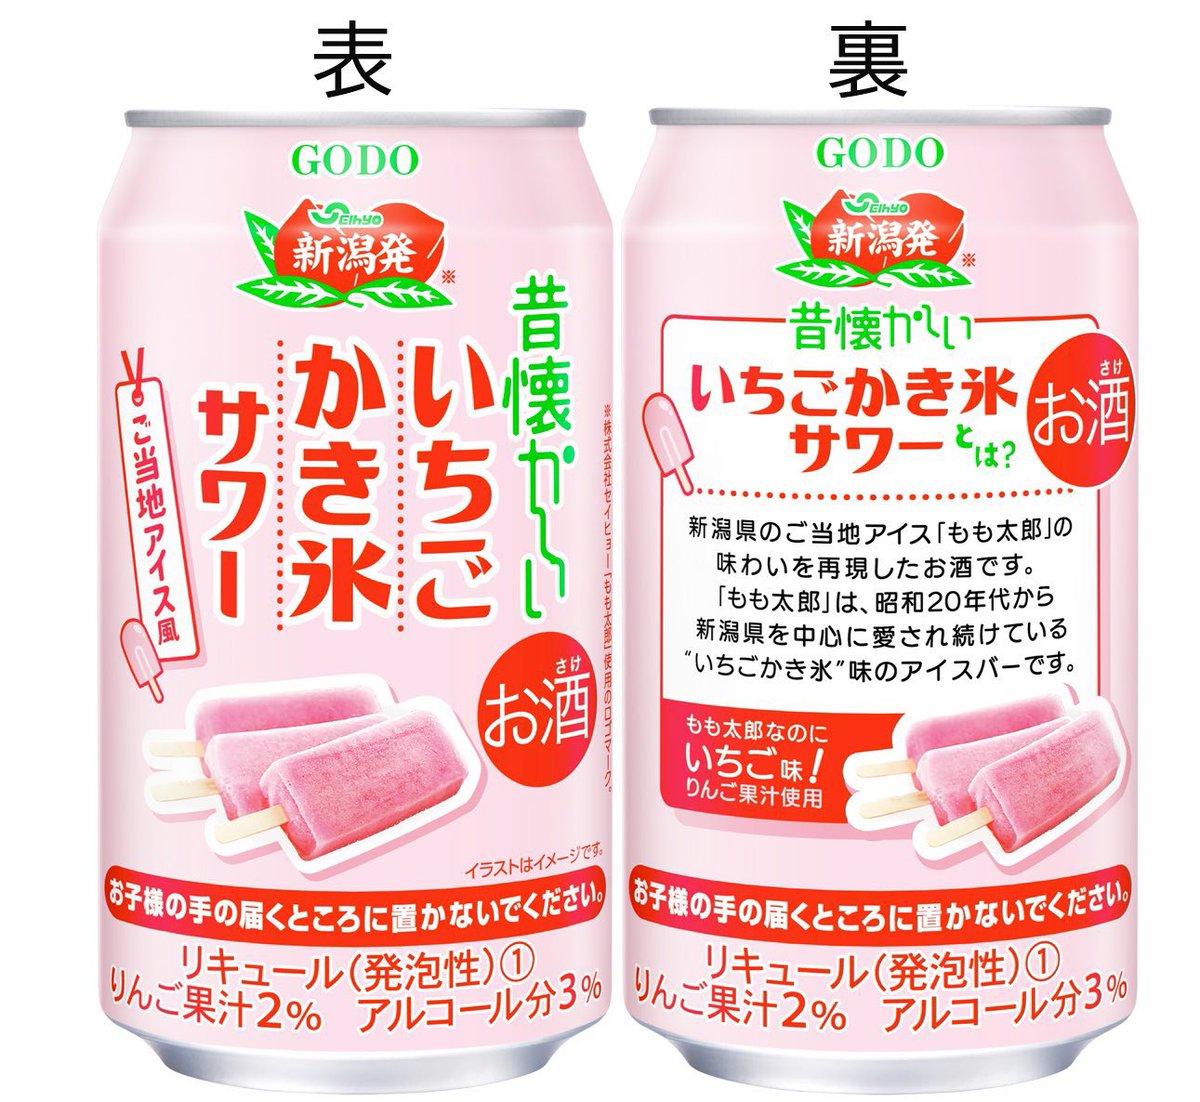 ６月２７日より全国で、新潟県で人気のセイヒョーのアイス「もも太郎」の味わいをサワーで再現した「昔懐かしいいちごかき氷サワー」が新発売されます✨